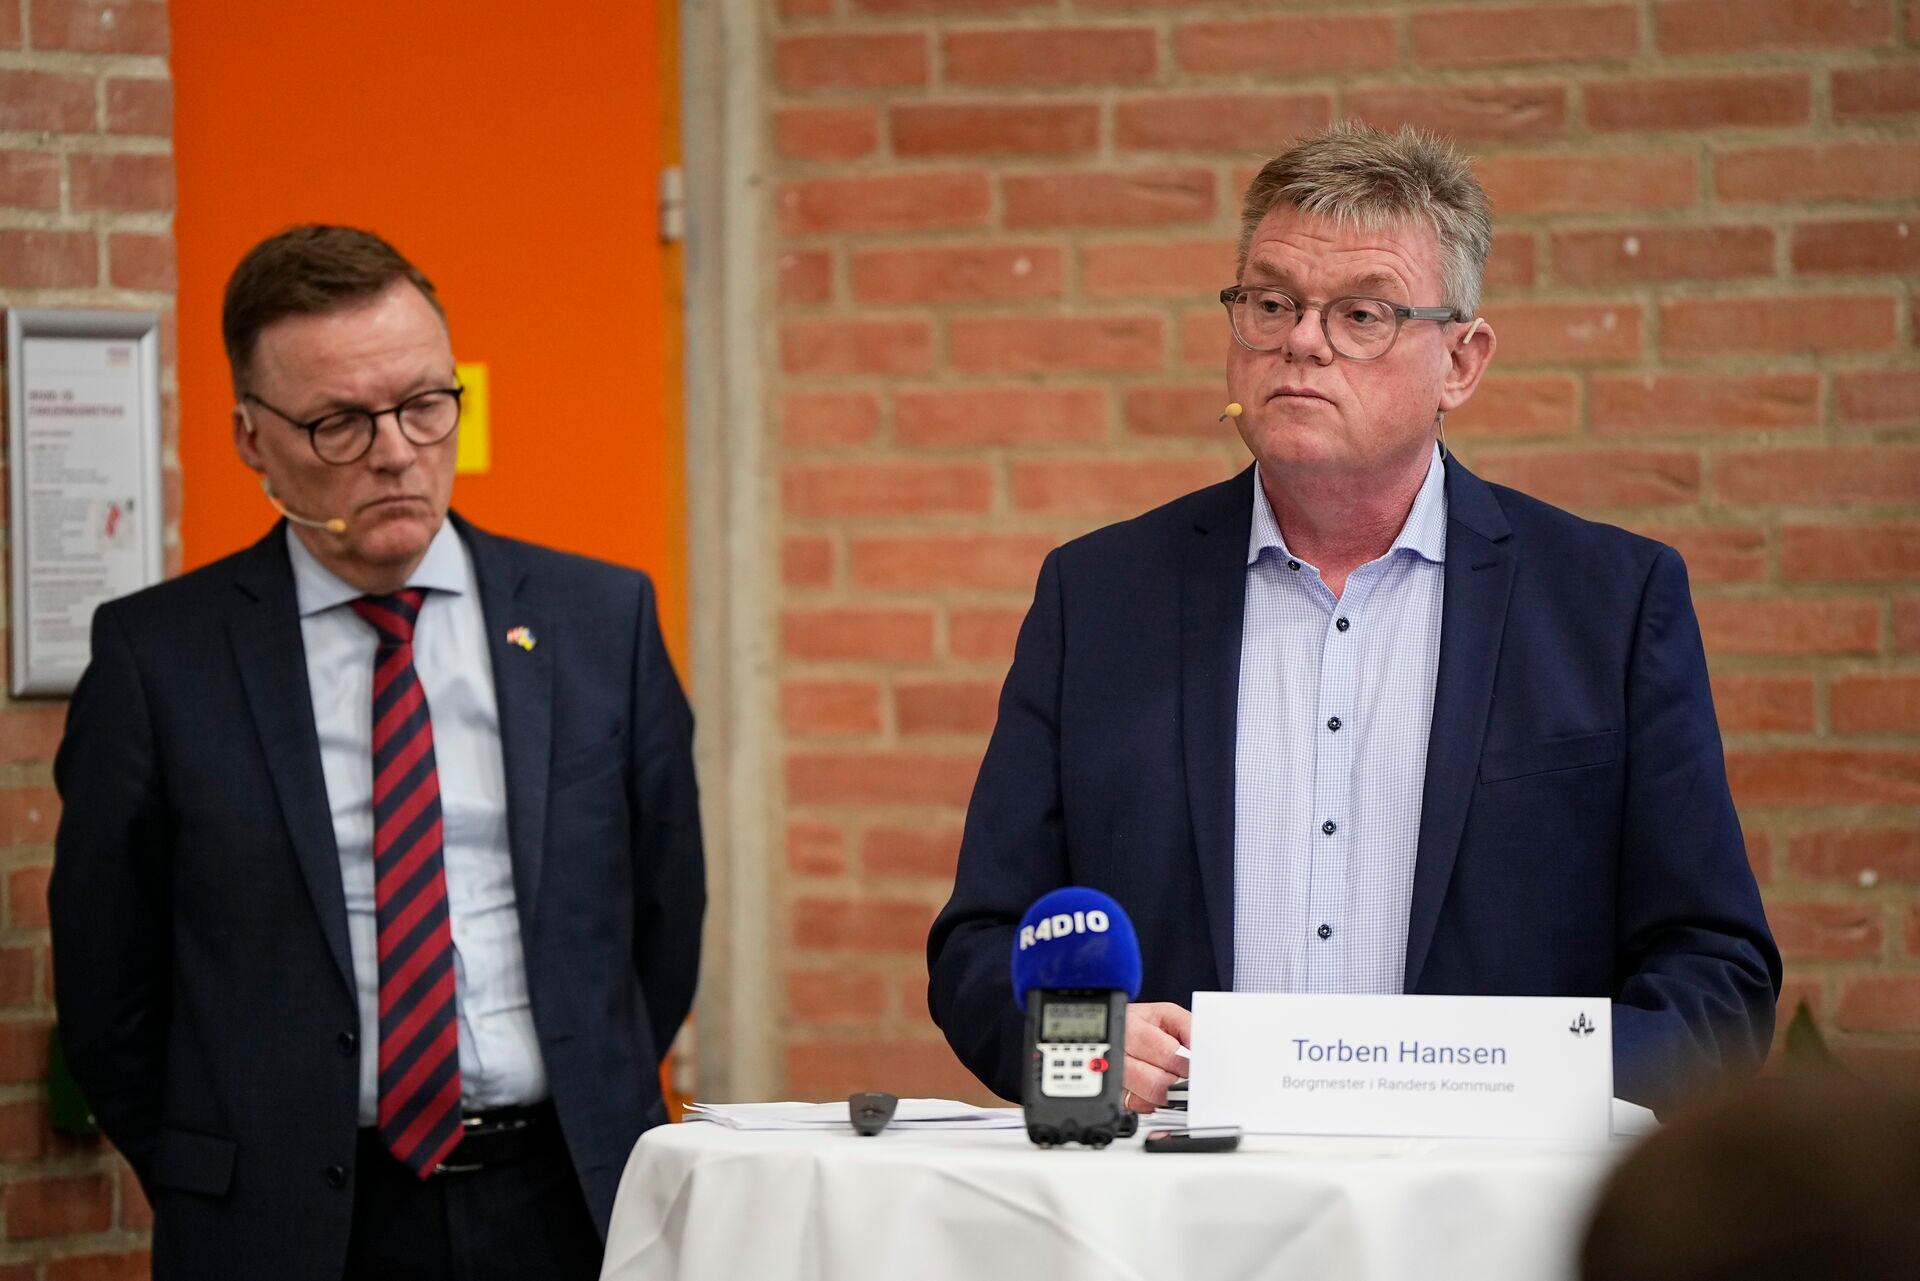   Den uventede regning fra jordskreddet ved Nordic Waste får kommunens topfolk, borgmester Toben Hansen (Util højre) og kommunaldirektør Jesper Kaas Schmidt, til at bede om mere hjælp.